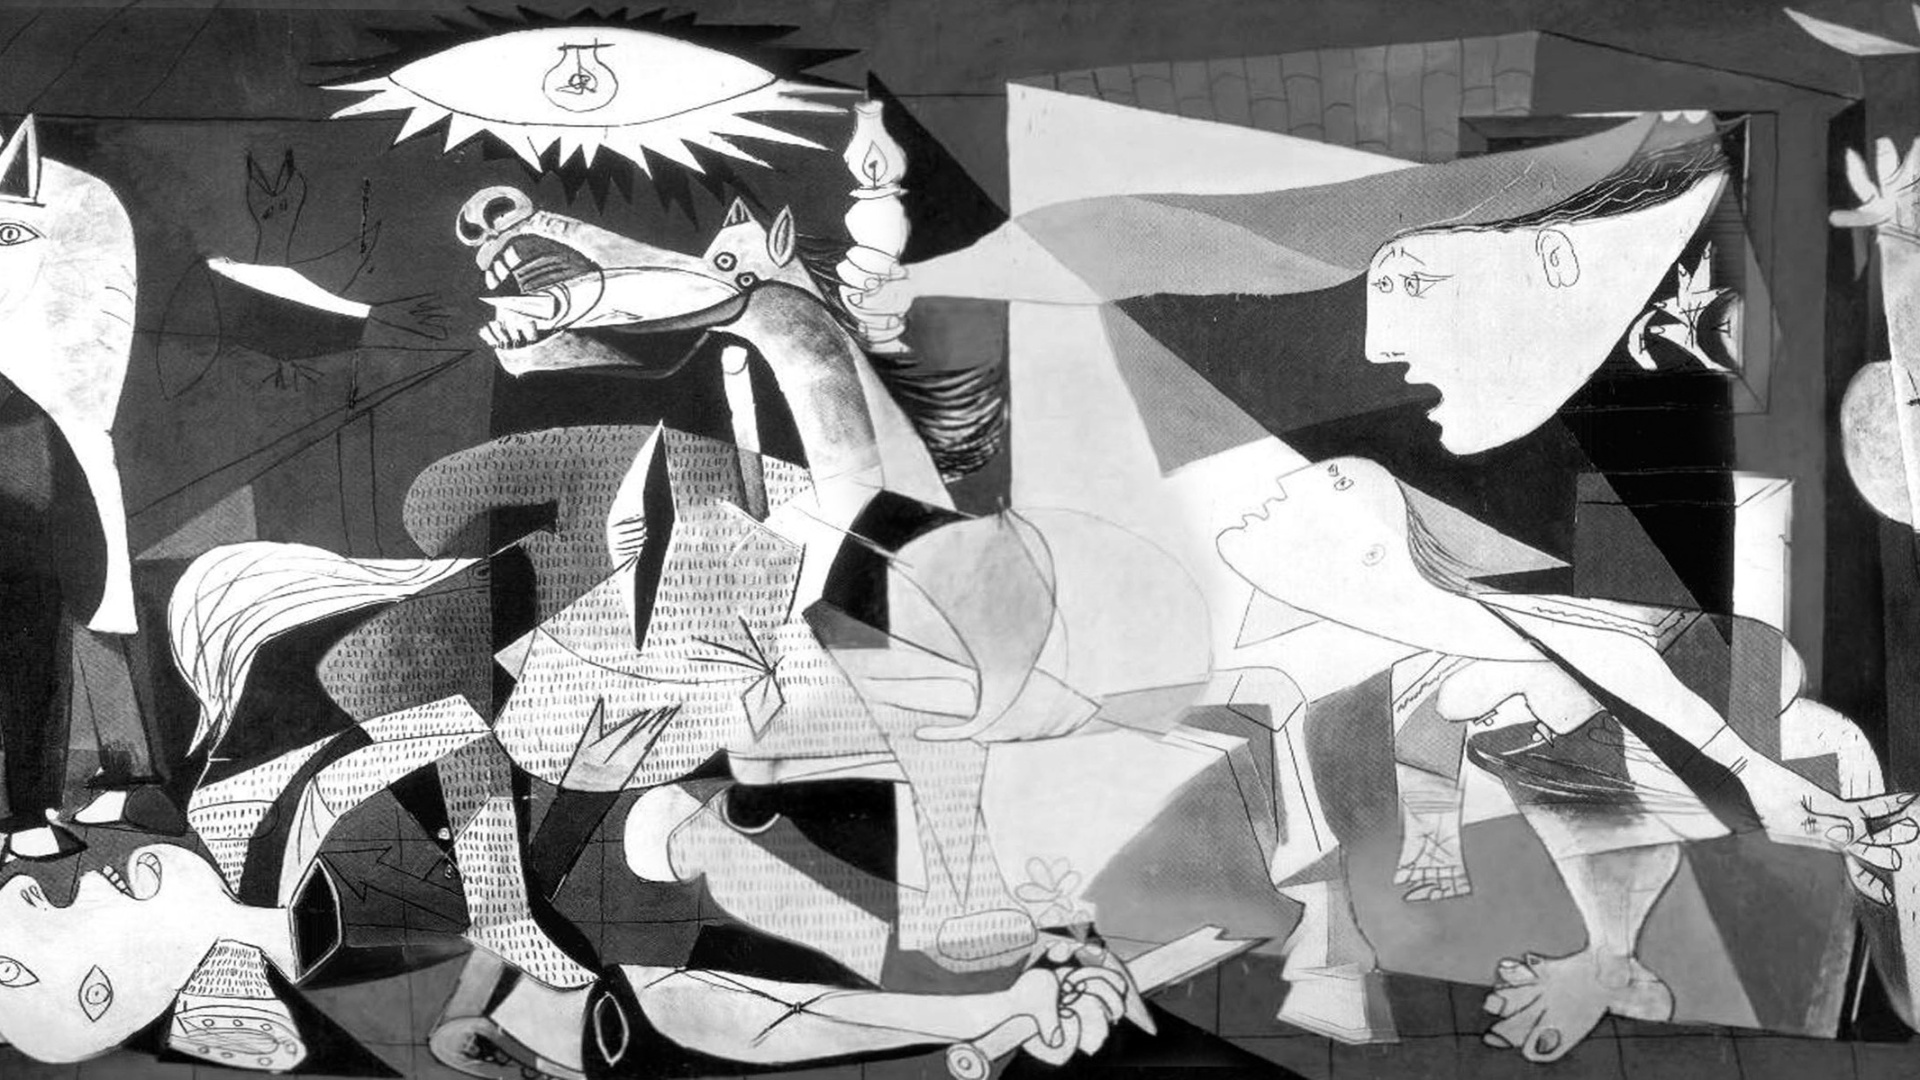  Նկարիչ Պաբլո Պիկասոյի ժառանգությունը ավելի շատ հակասություններ է առաջացնում. ավելի շատ հասկացեք